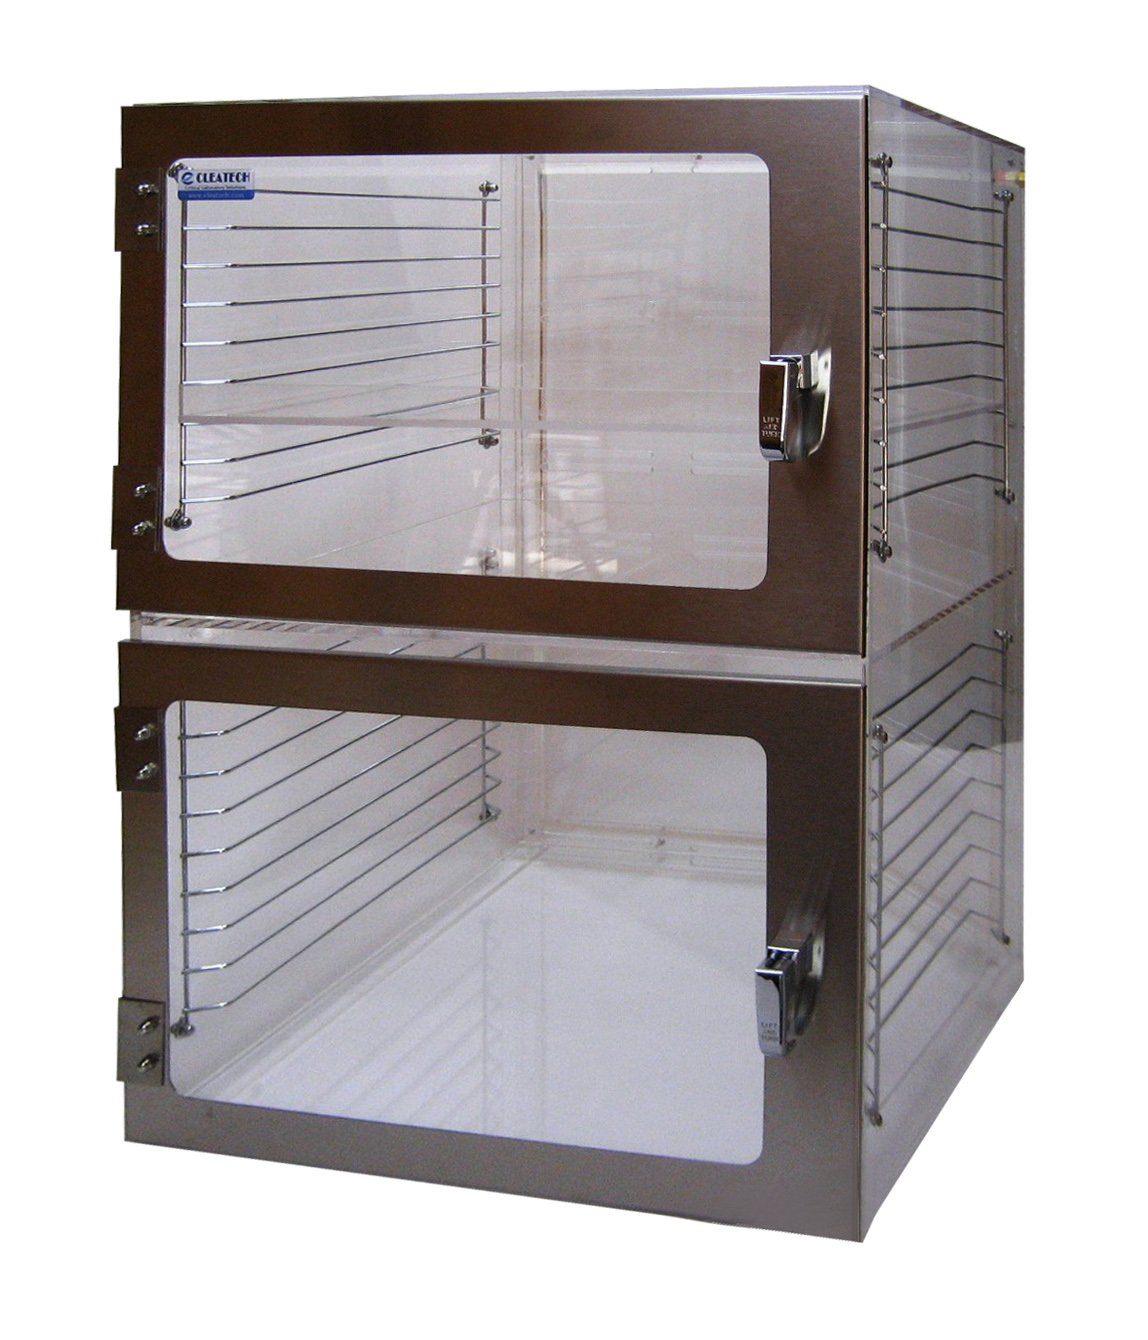 Nitrogen Desiccator Cabinets